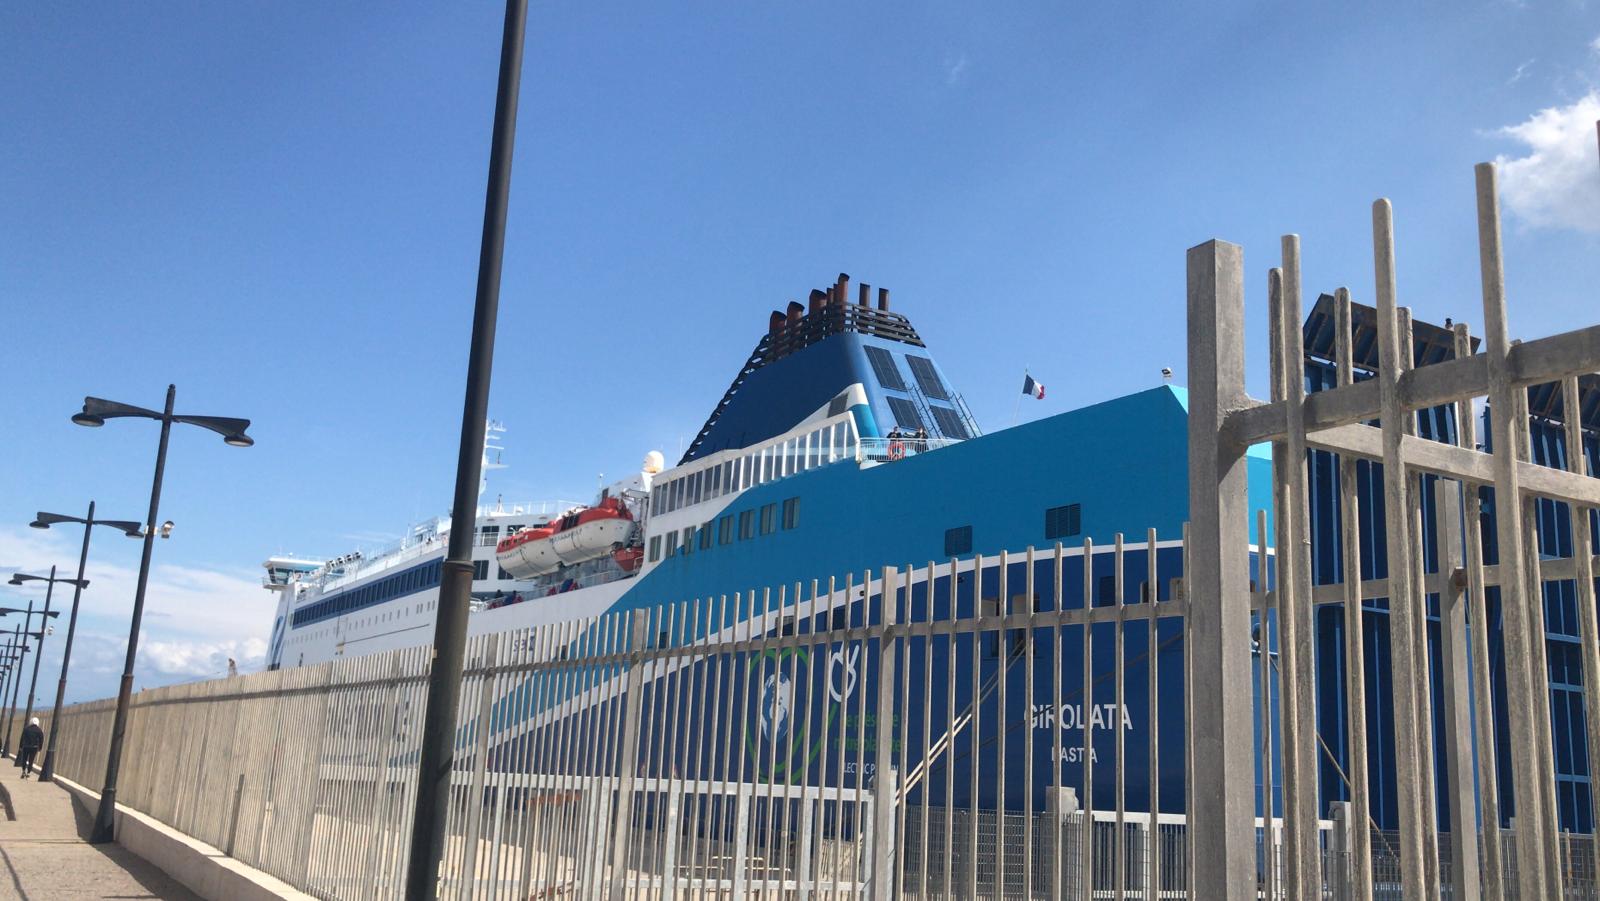 Bacino da 150mila tonnellate Cantiere Navale Palermo e porto Termini Imerese: la Fiom incontra Monti